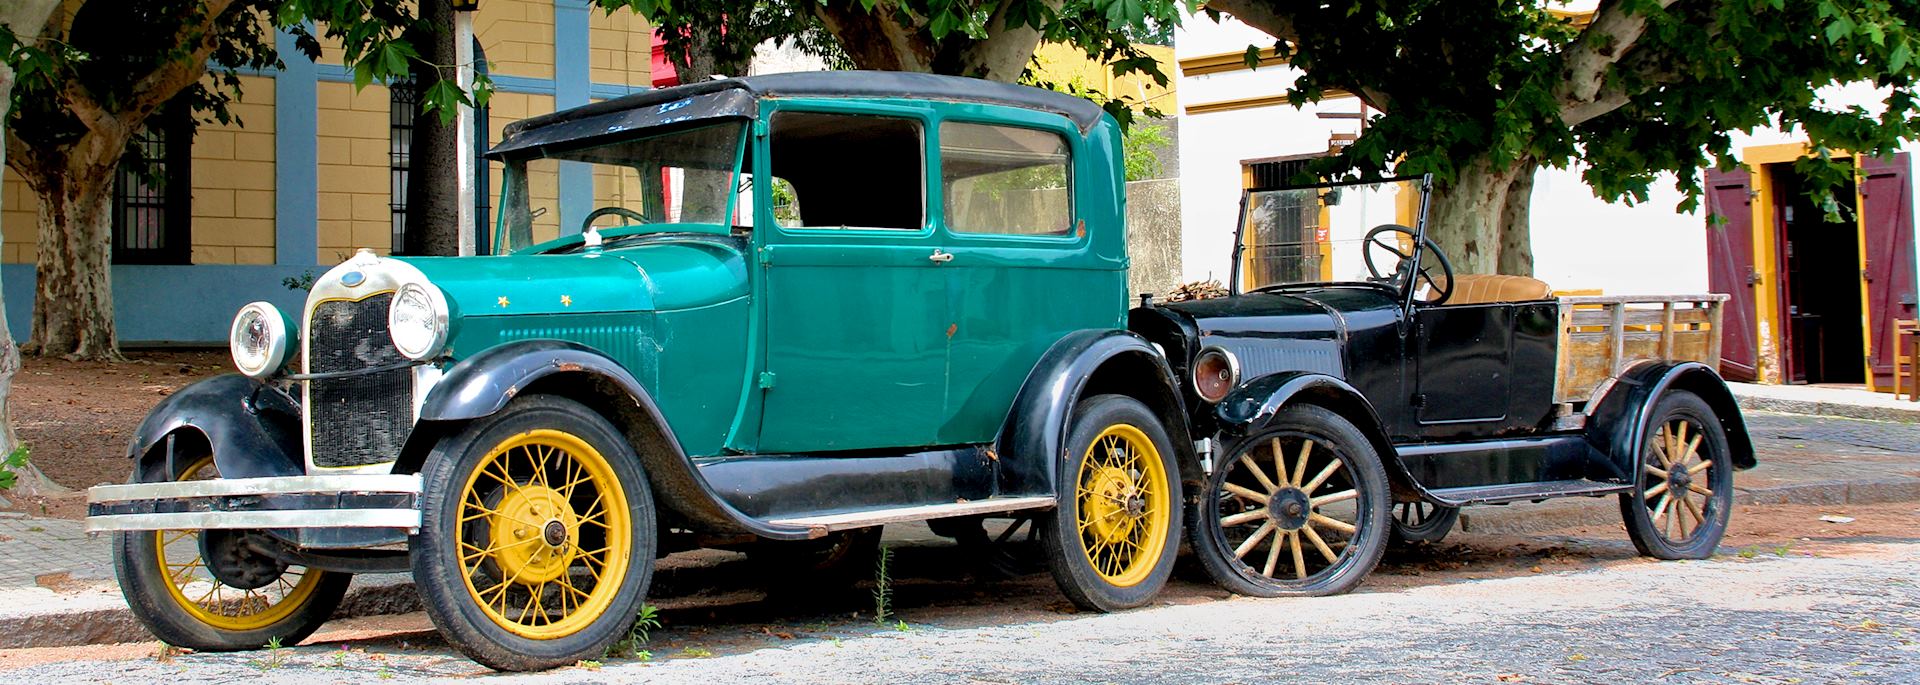 Vintage cars in Colonia del Sacramento